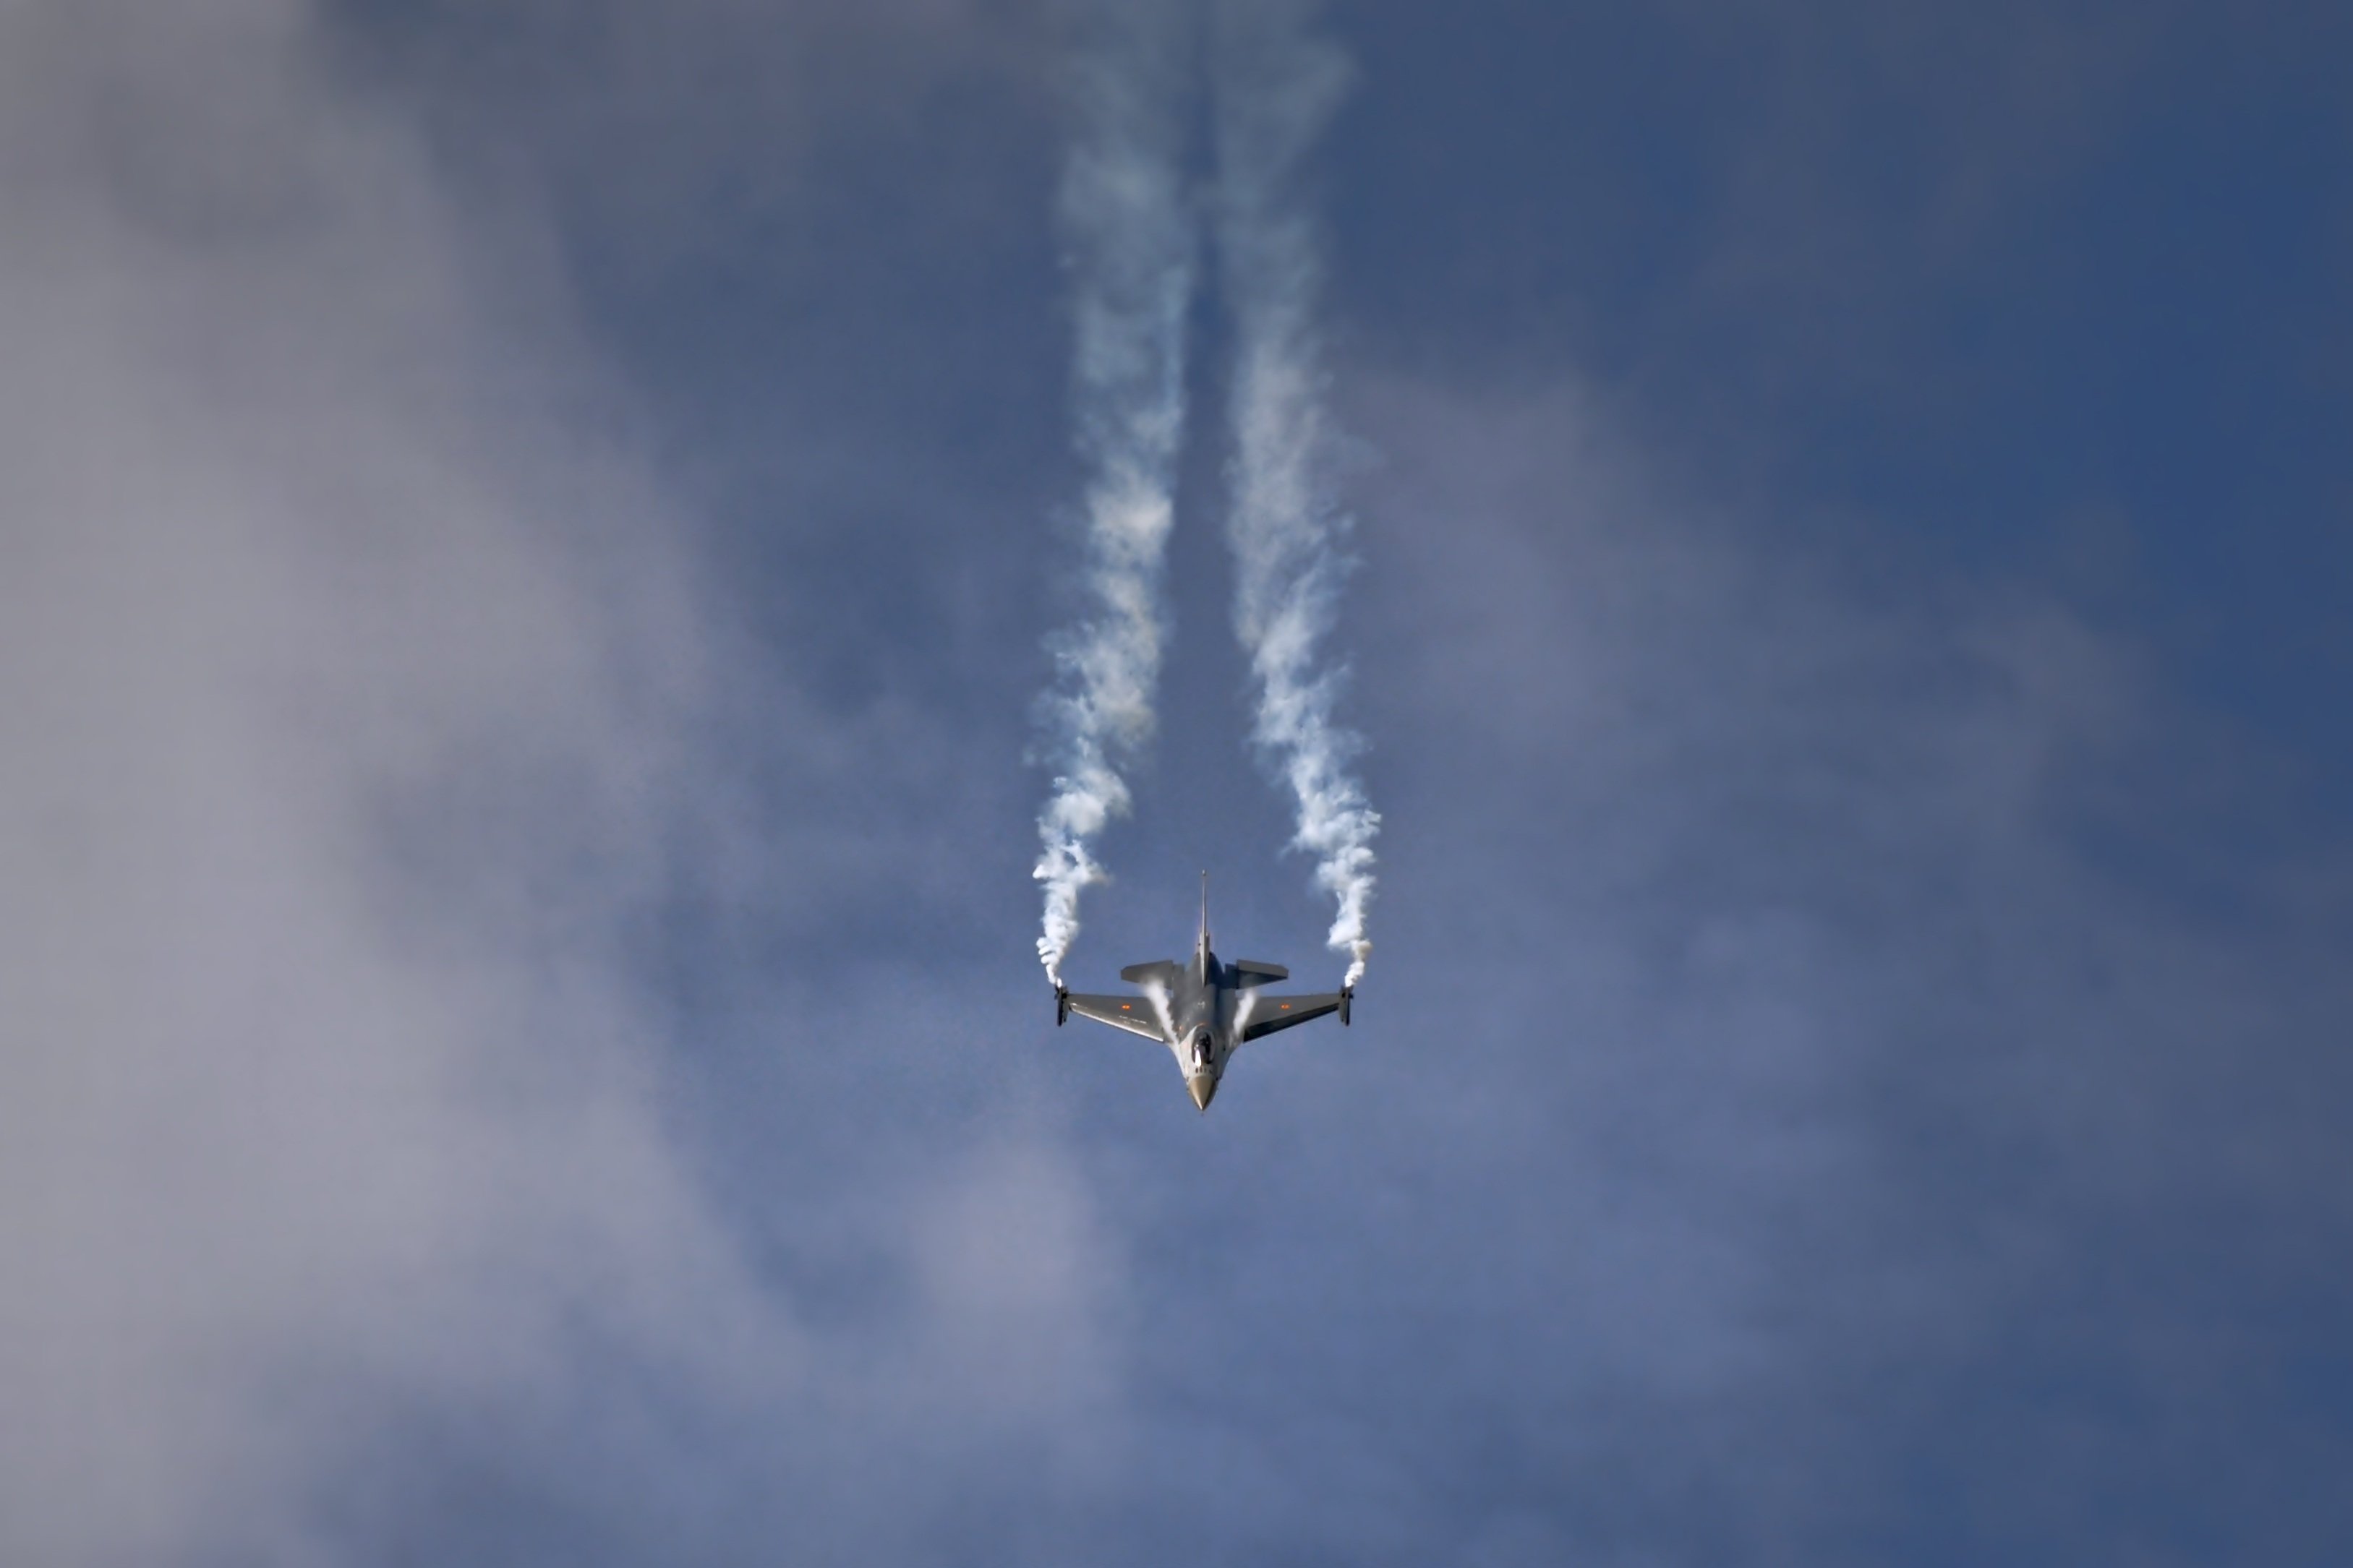 Реактивный самолет в небе. Истребитель в небе. Самолет с дымом. Cfvjktn DF yt,t. Самолет в облаках.